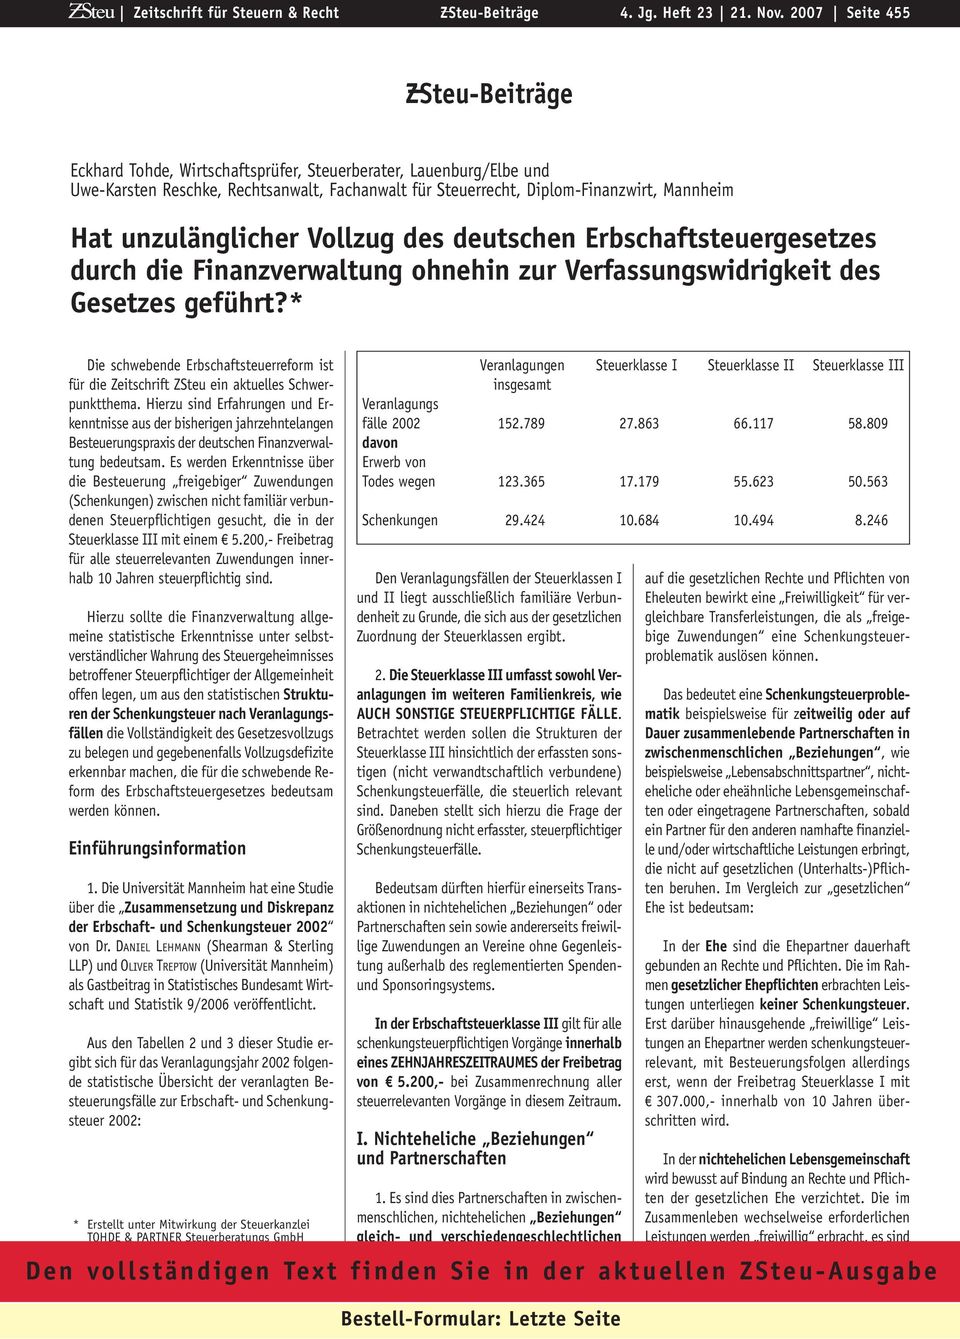 unzulänglicher Vollzug des deutschen Erbschaftsteuergesetzes durch die Finanzverwaltung ohnehin zur Verfassungswidrigkeit des Gesetzes geführt?